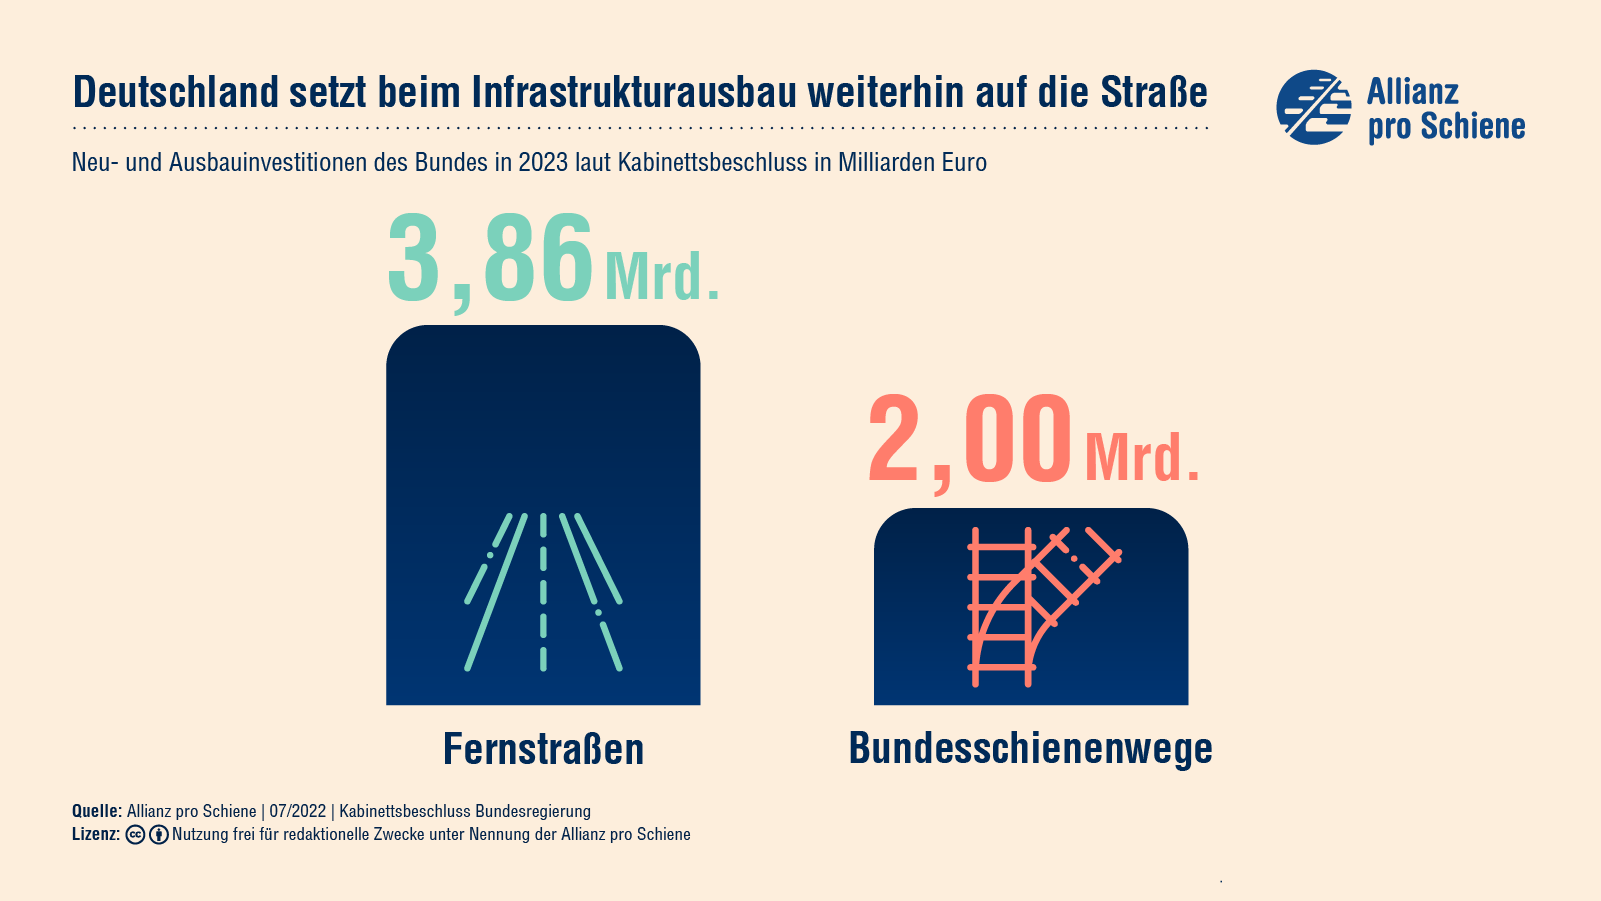 Für den Ausbau von Bundesfernstraßen gibt der bund knapp 4 Mrd Euro aus. Für die Schiene nur 2 Mrd.